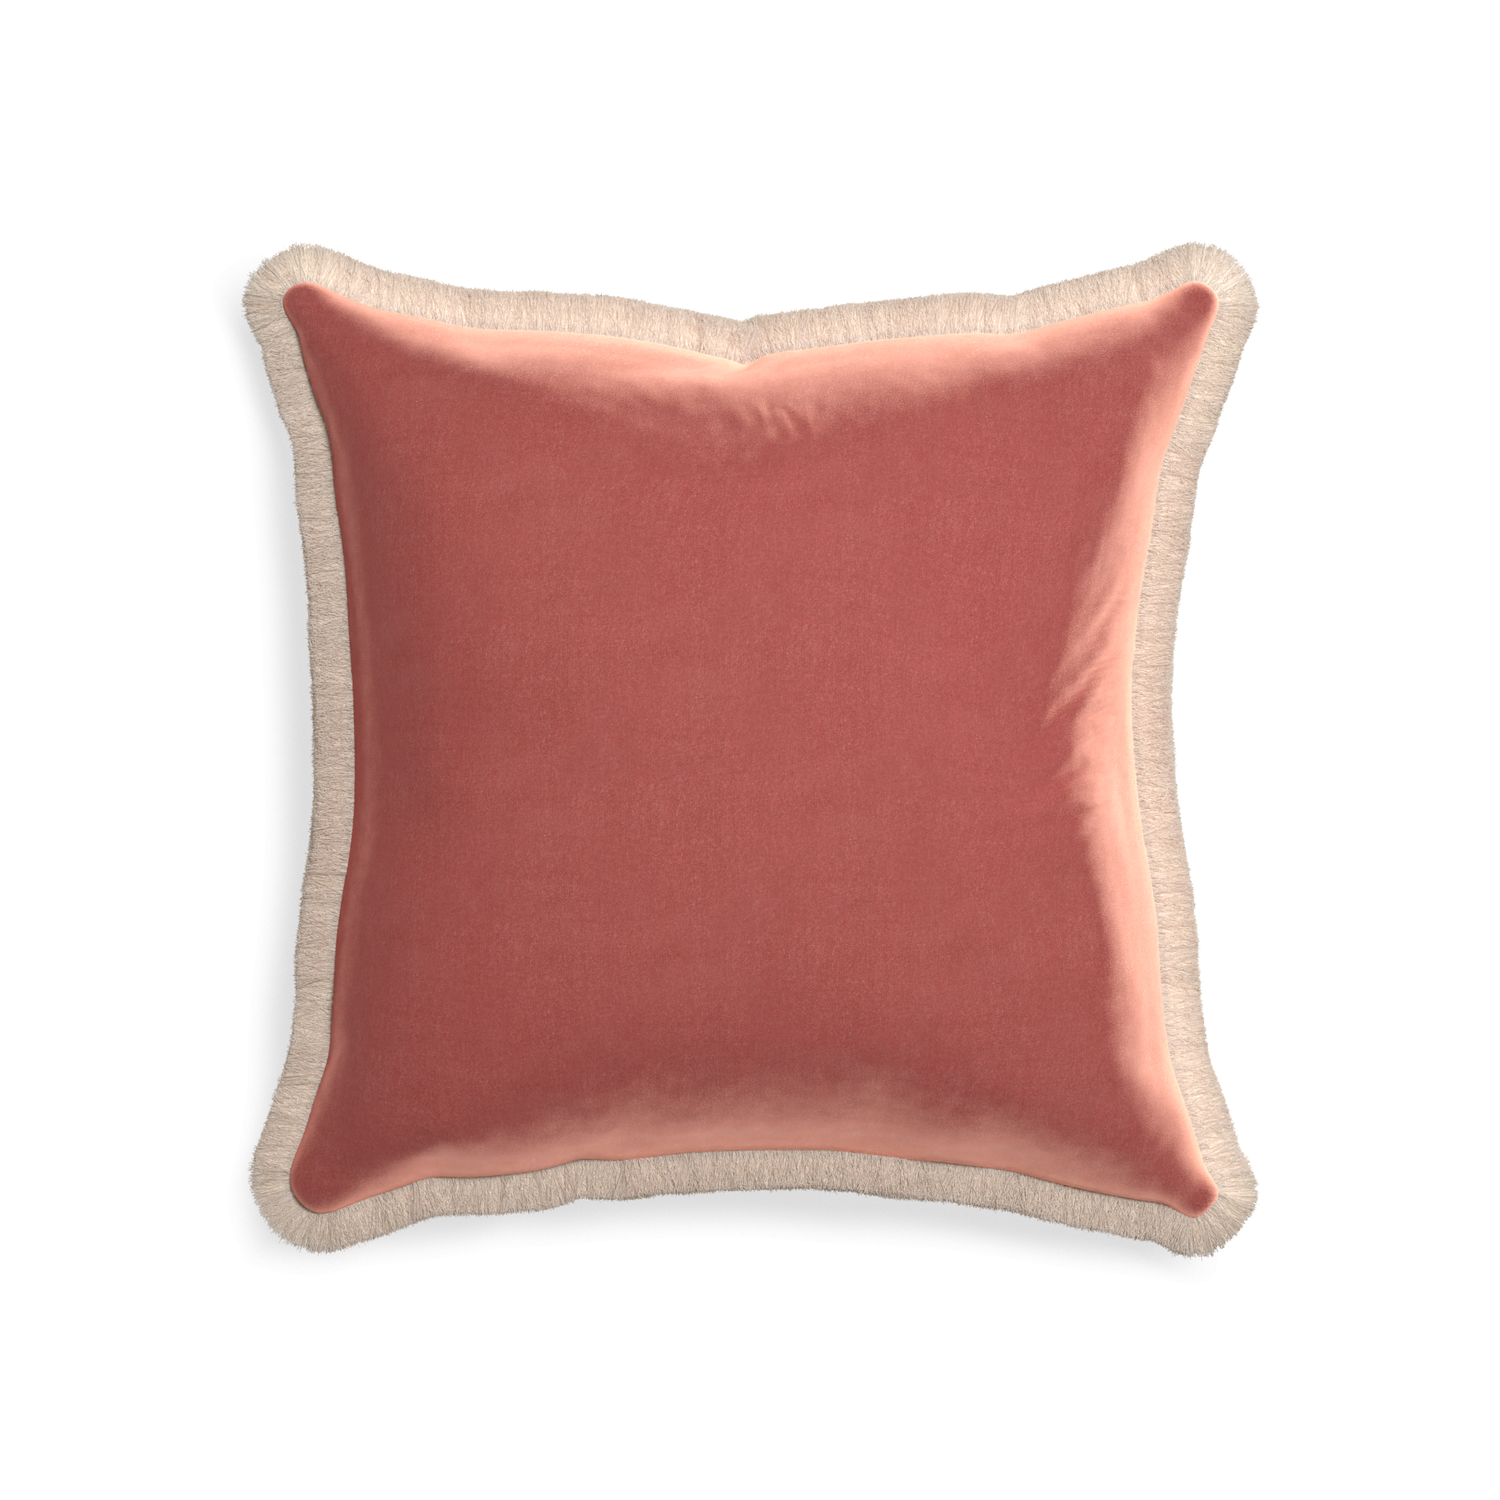 20-square cosmo velvet custom pillow with cream fringe on white background